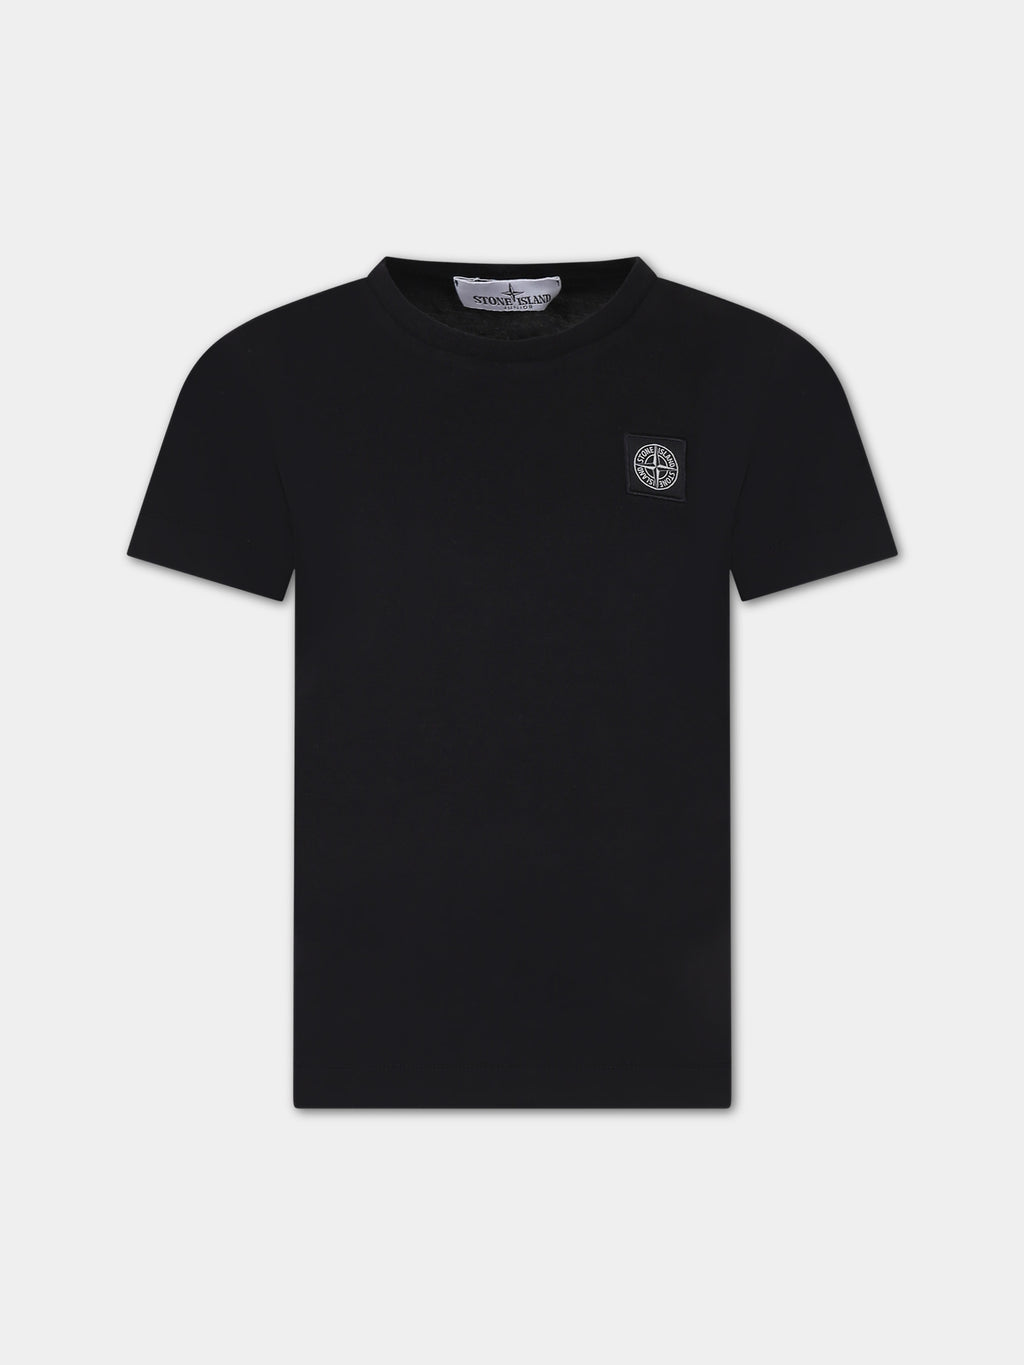 T-shirt nera per bambino con iconica bussola